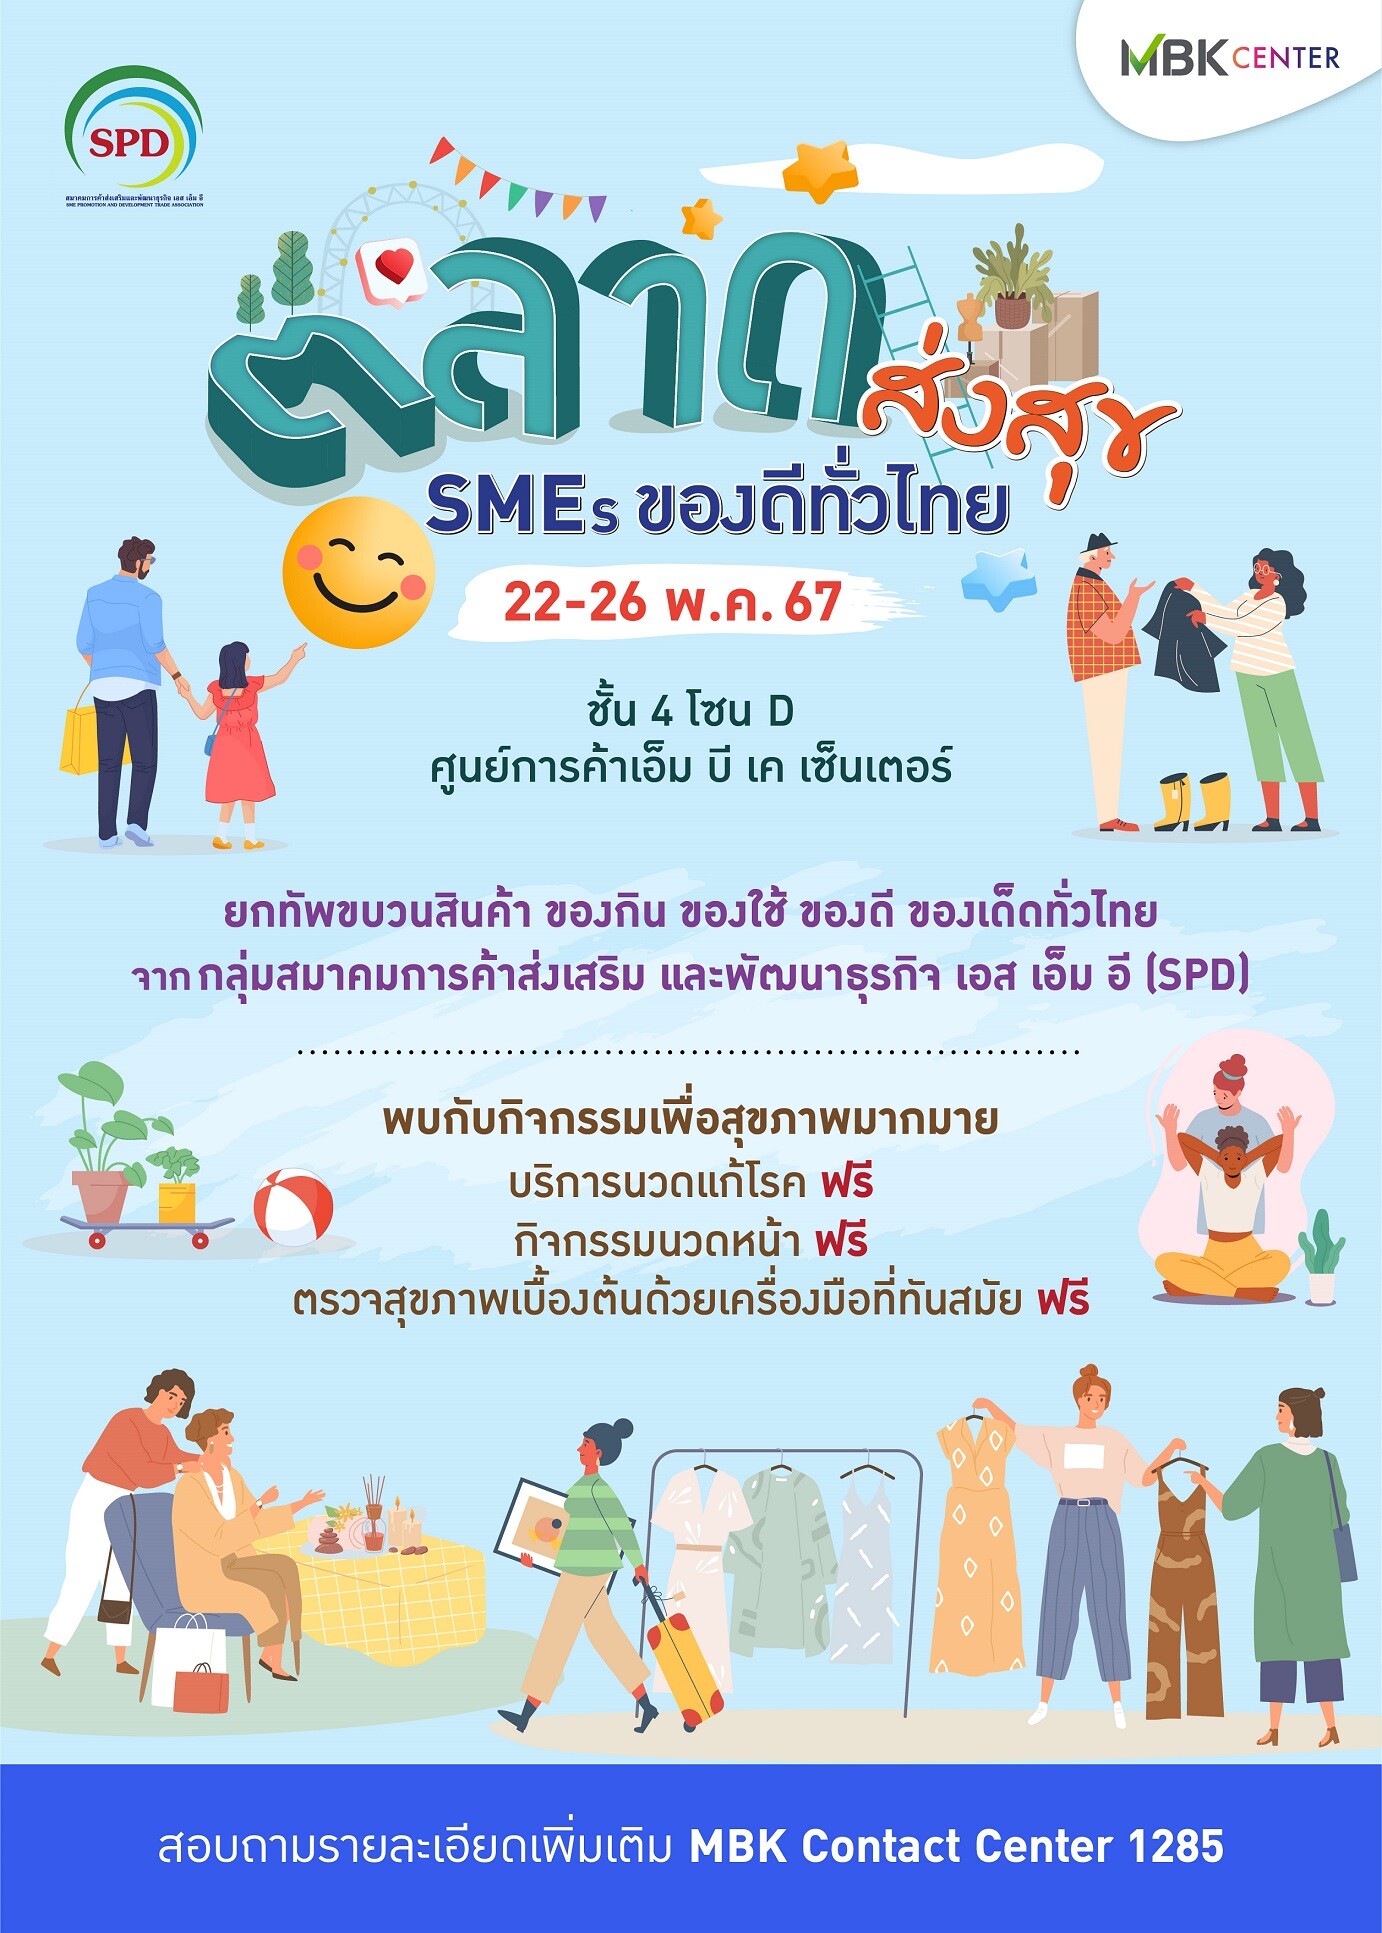 เอ็ม บี เค เซ็นเตอร์ ชวนช้อปของดีของเด็ดทั่วไทยในงานตลาดส่งสุข SMEs ของดีทั่วไทย พร้อมกิจกรรมนวดแก้โรค นวดหน้า ตรวจสุขภาพ ฟรี!! สายช้อปสายสุขภาพห้ามพลาด 22-26 พ.ค.นี้